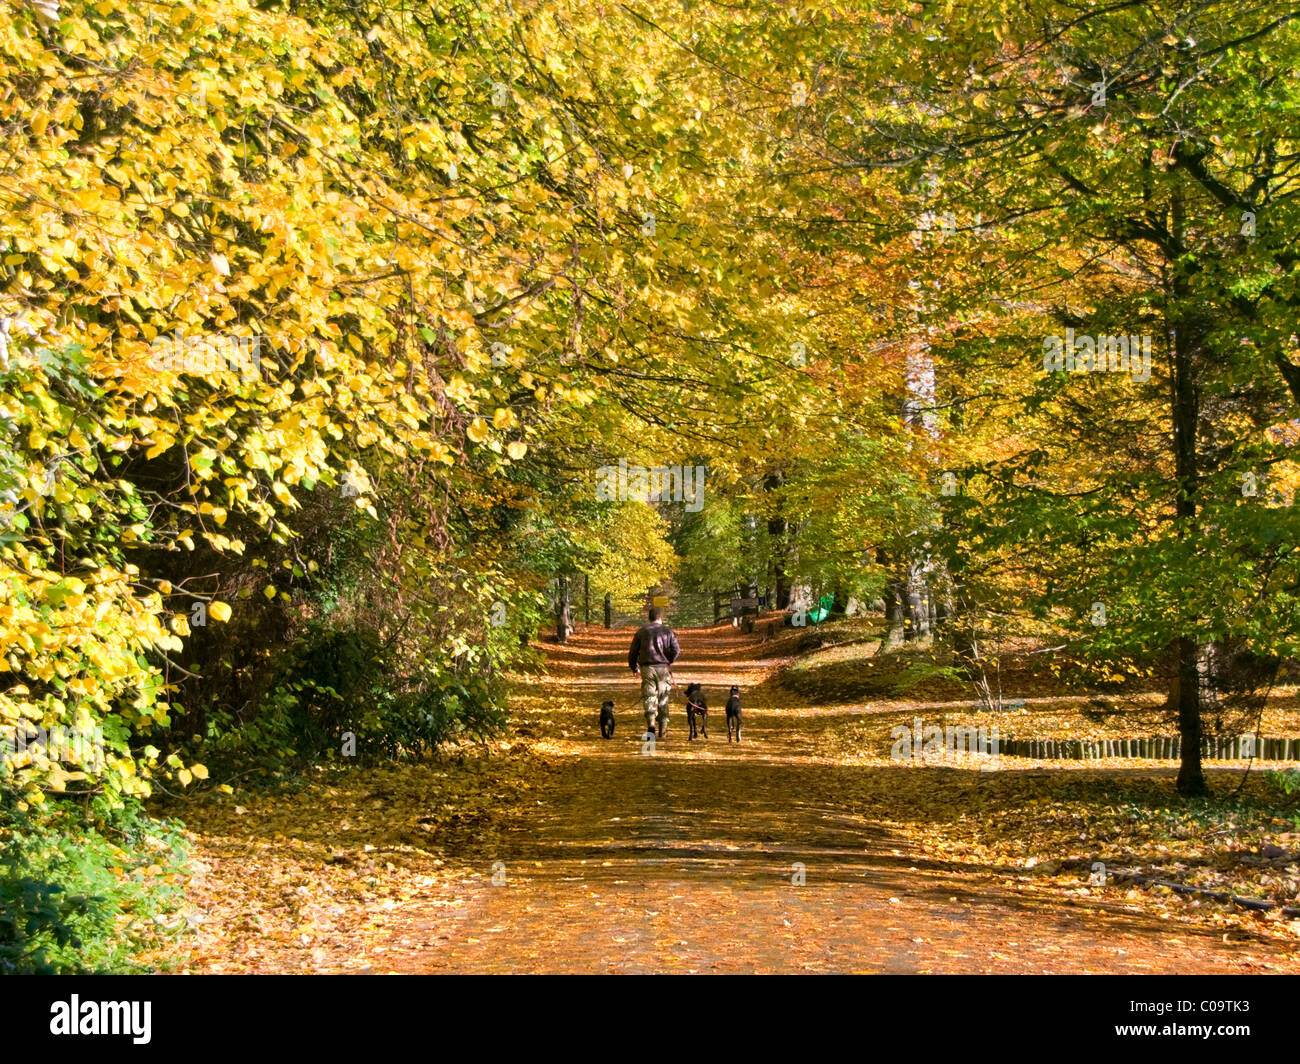 Homme marchant trois chiens parmi de beaux arbres d'automne, Whitegate, Cheshire, England, UK Banque D'Images